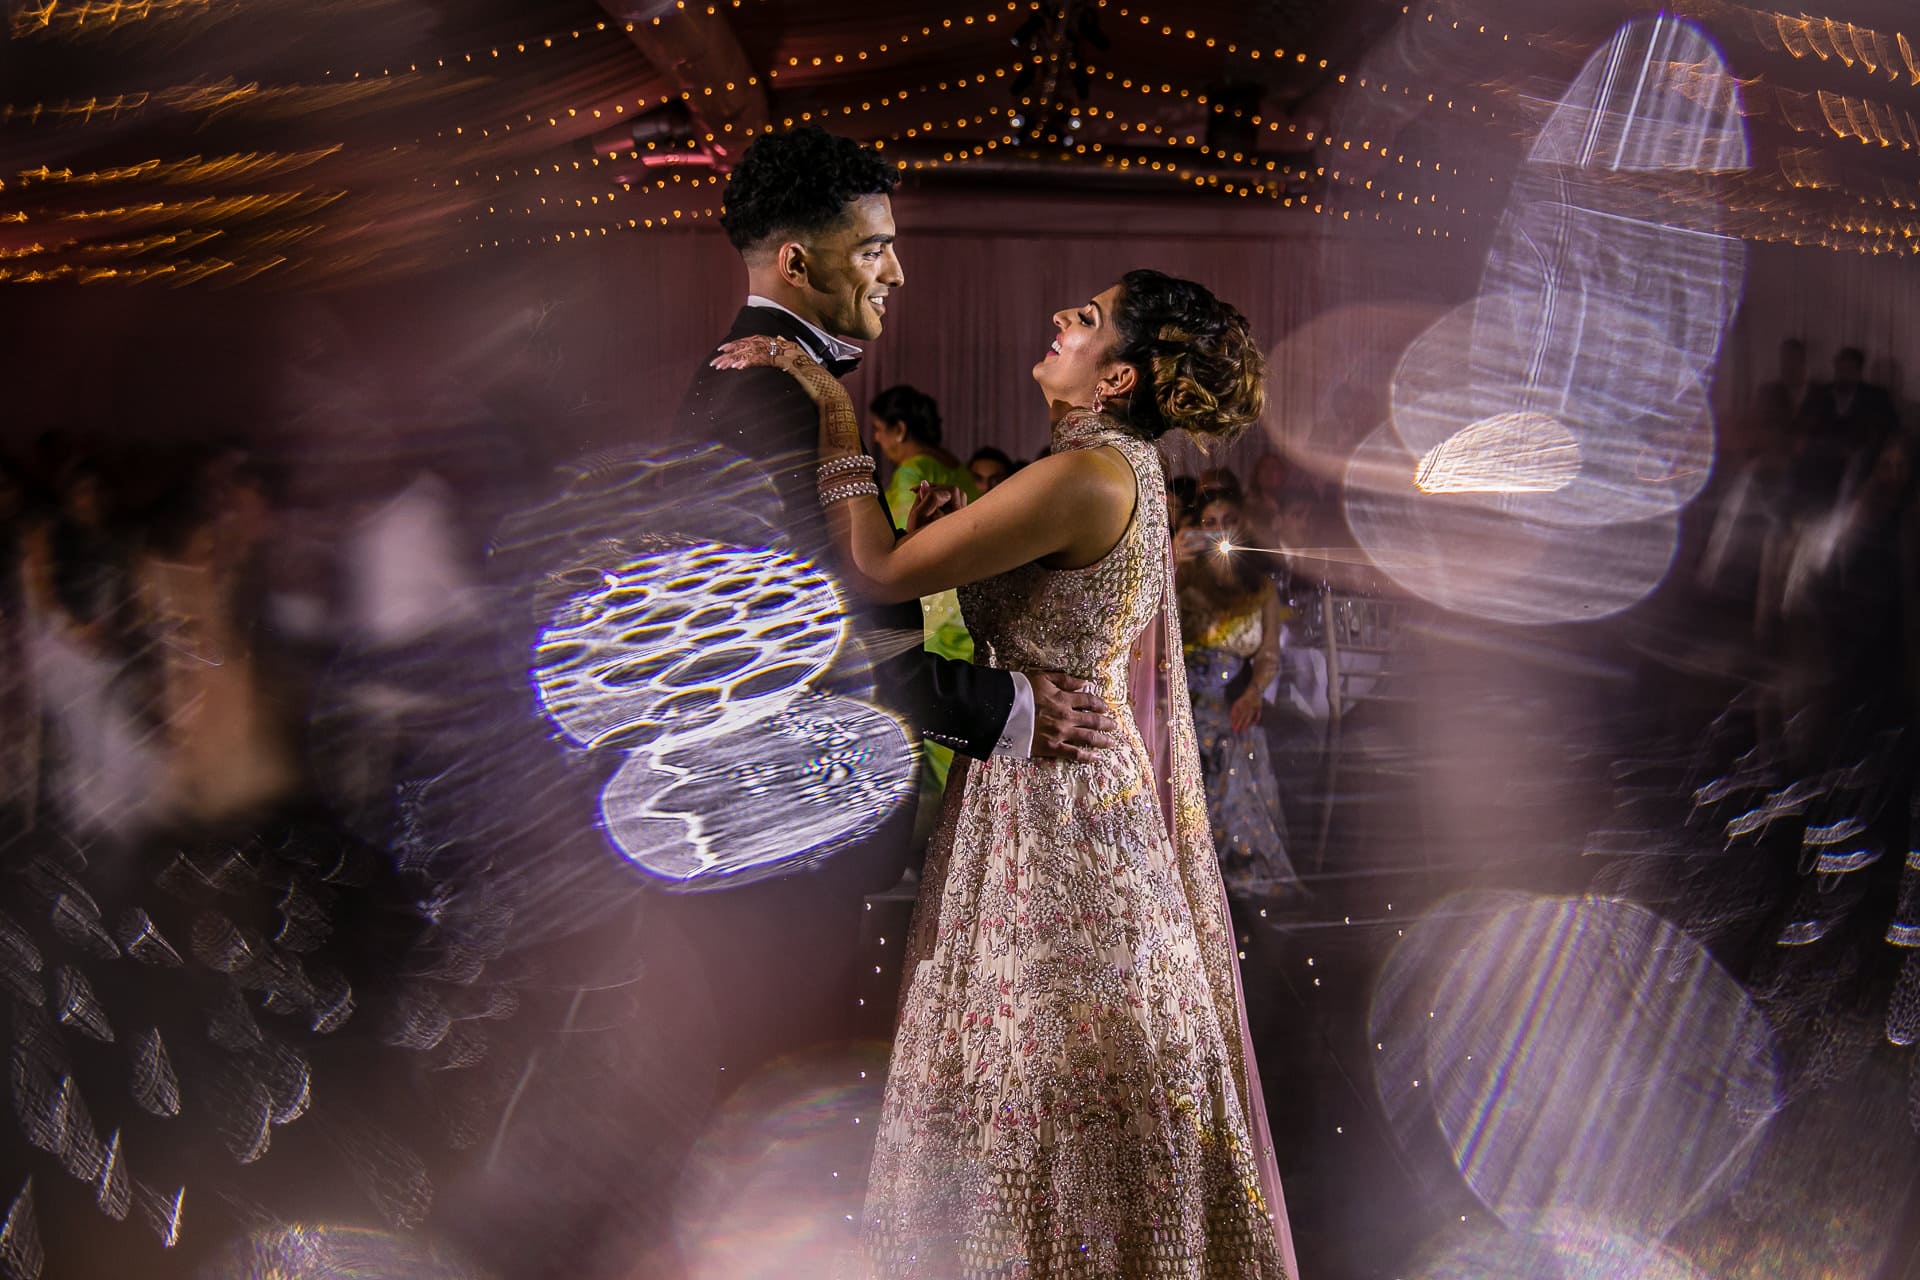 Asian wedding first dance